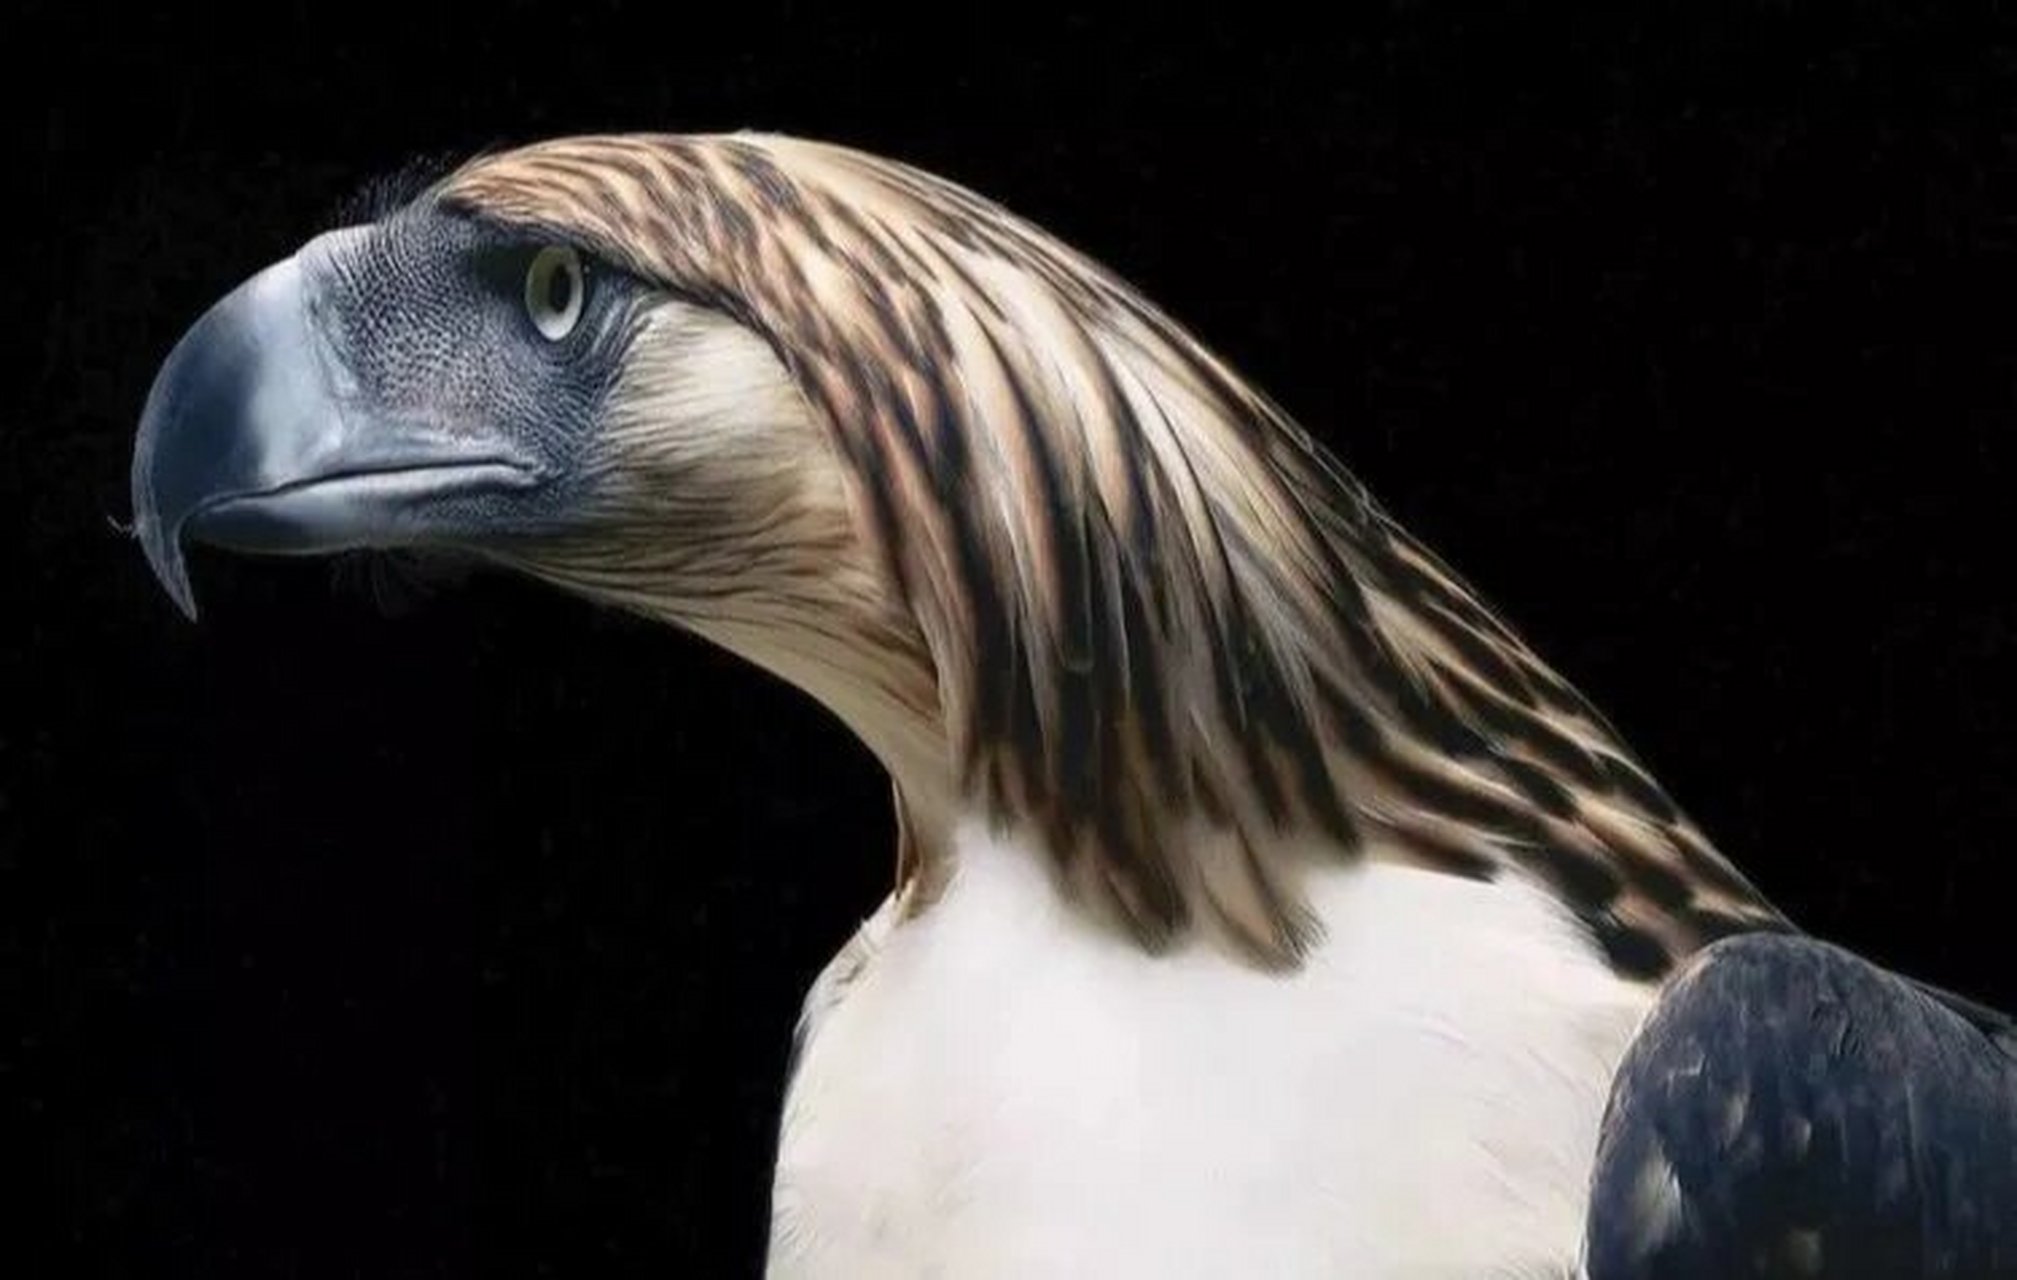 菲律宾国鸟——食猿雕 食猿雕:鹰科,食猿雕属鸟类